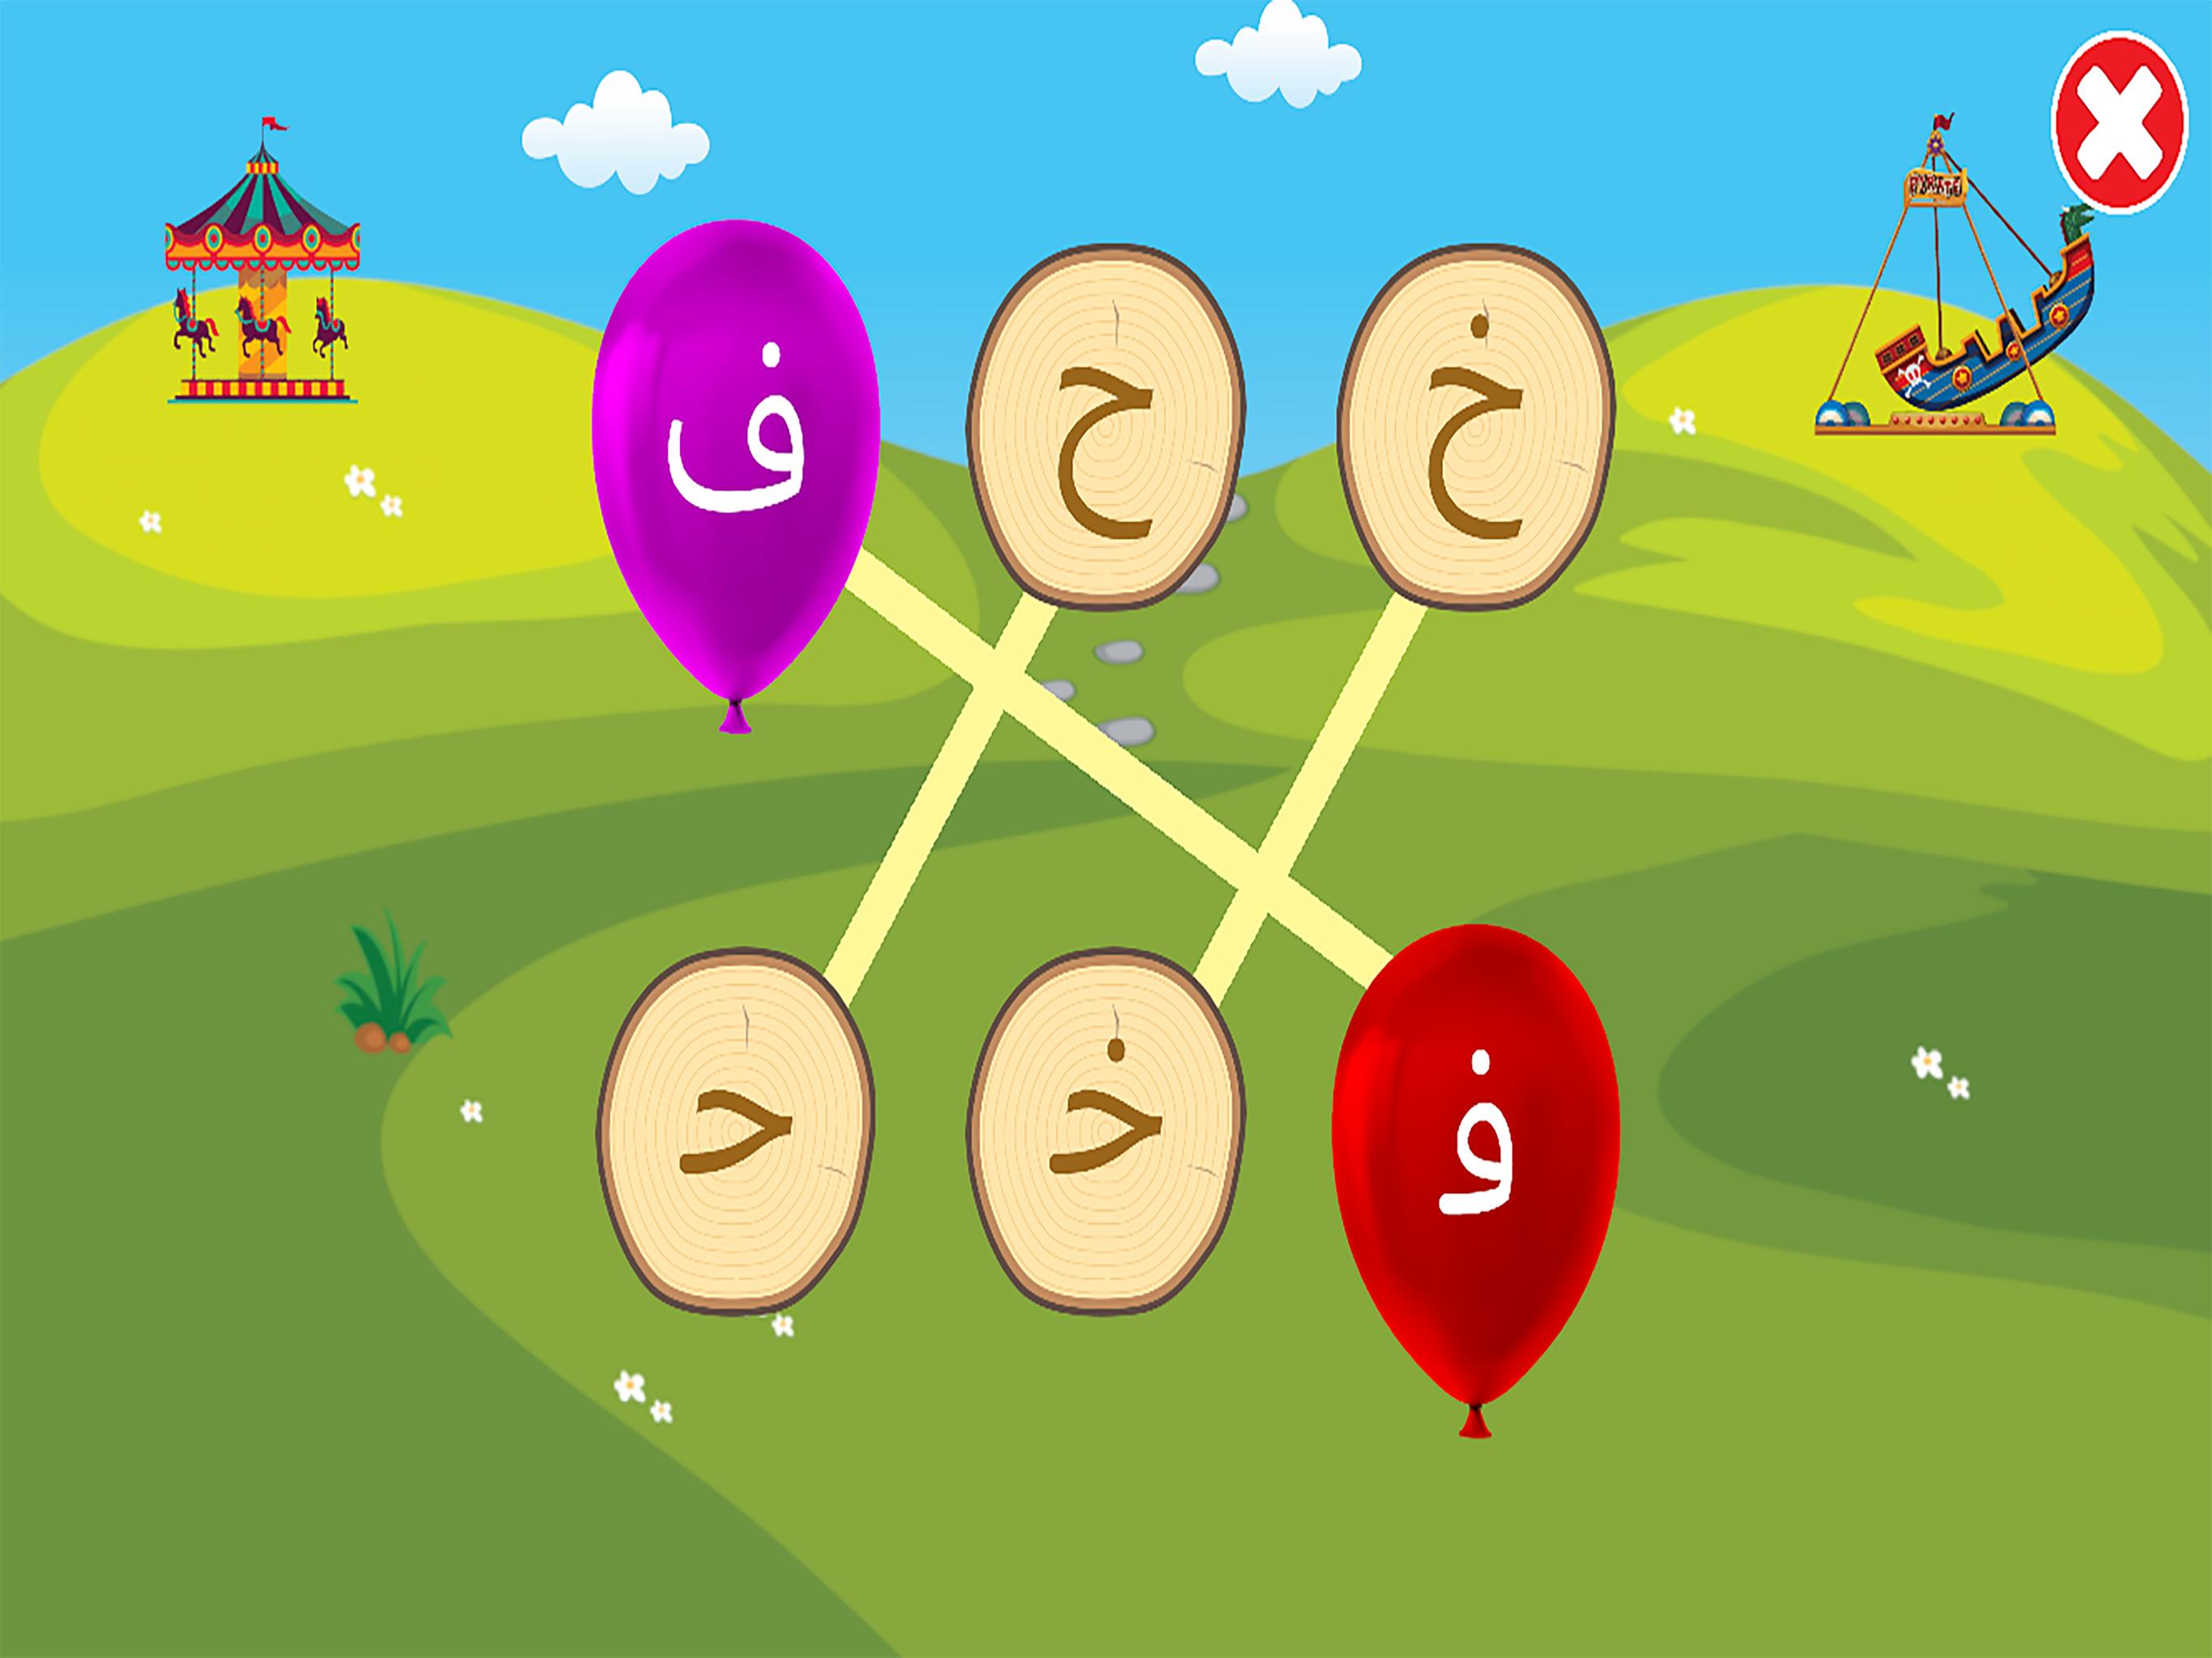 الفبای فارسی کودکان (Farsi alphabet game) 1.11.2 Screenshot 21